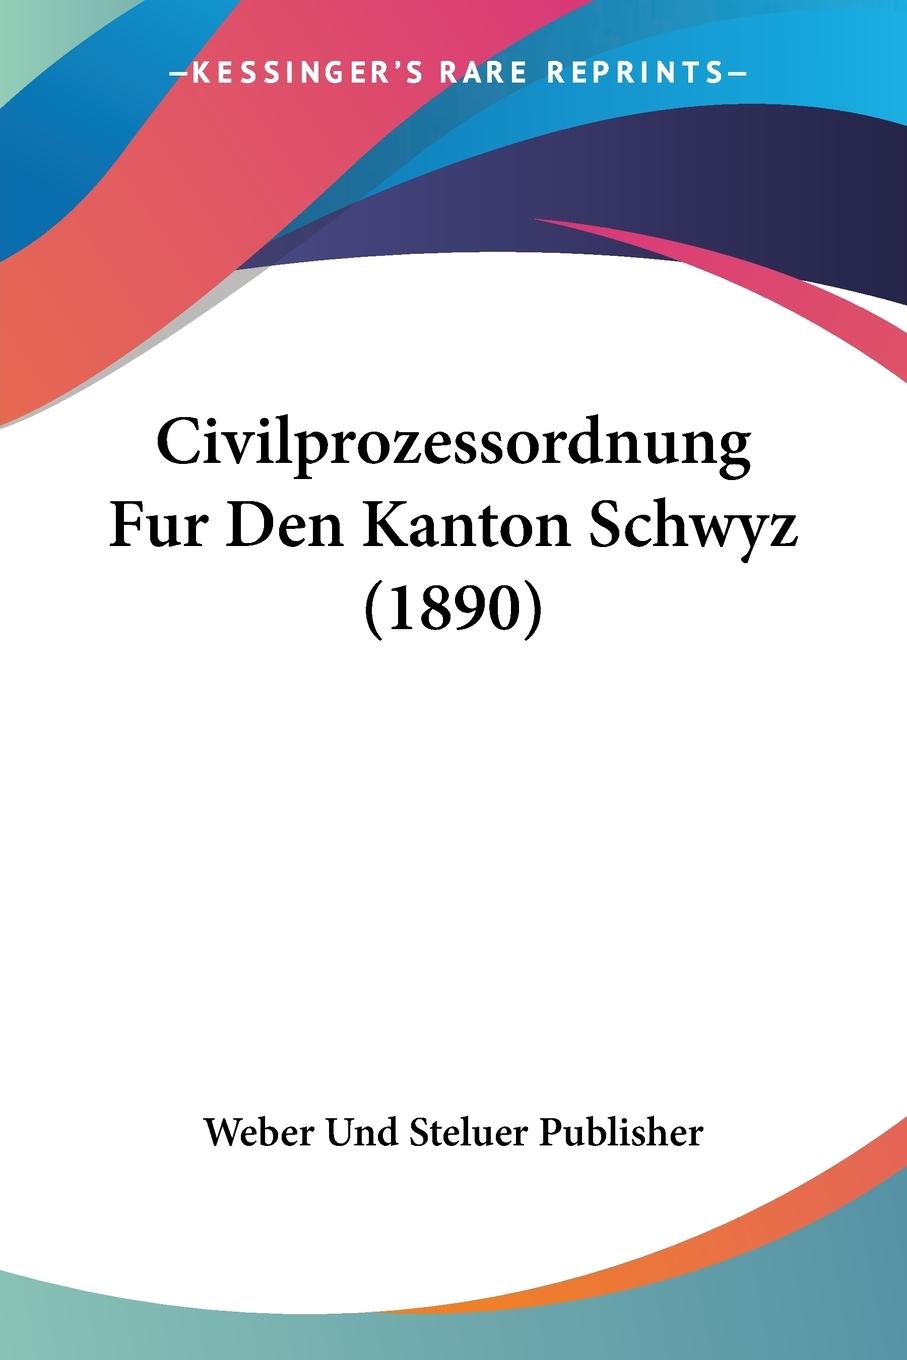 Civilprozessordnung Fur Den Kanton Schwyz (1890) - Weber Und Steluer Publisher